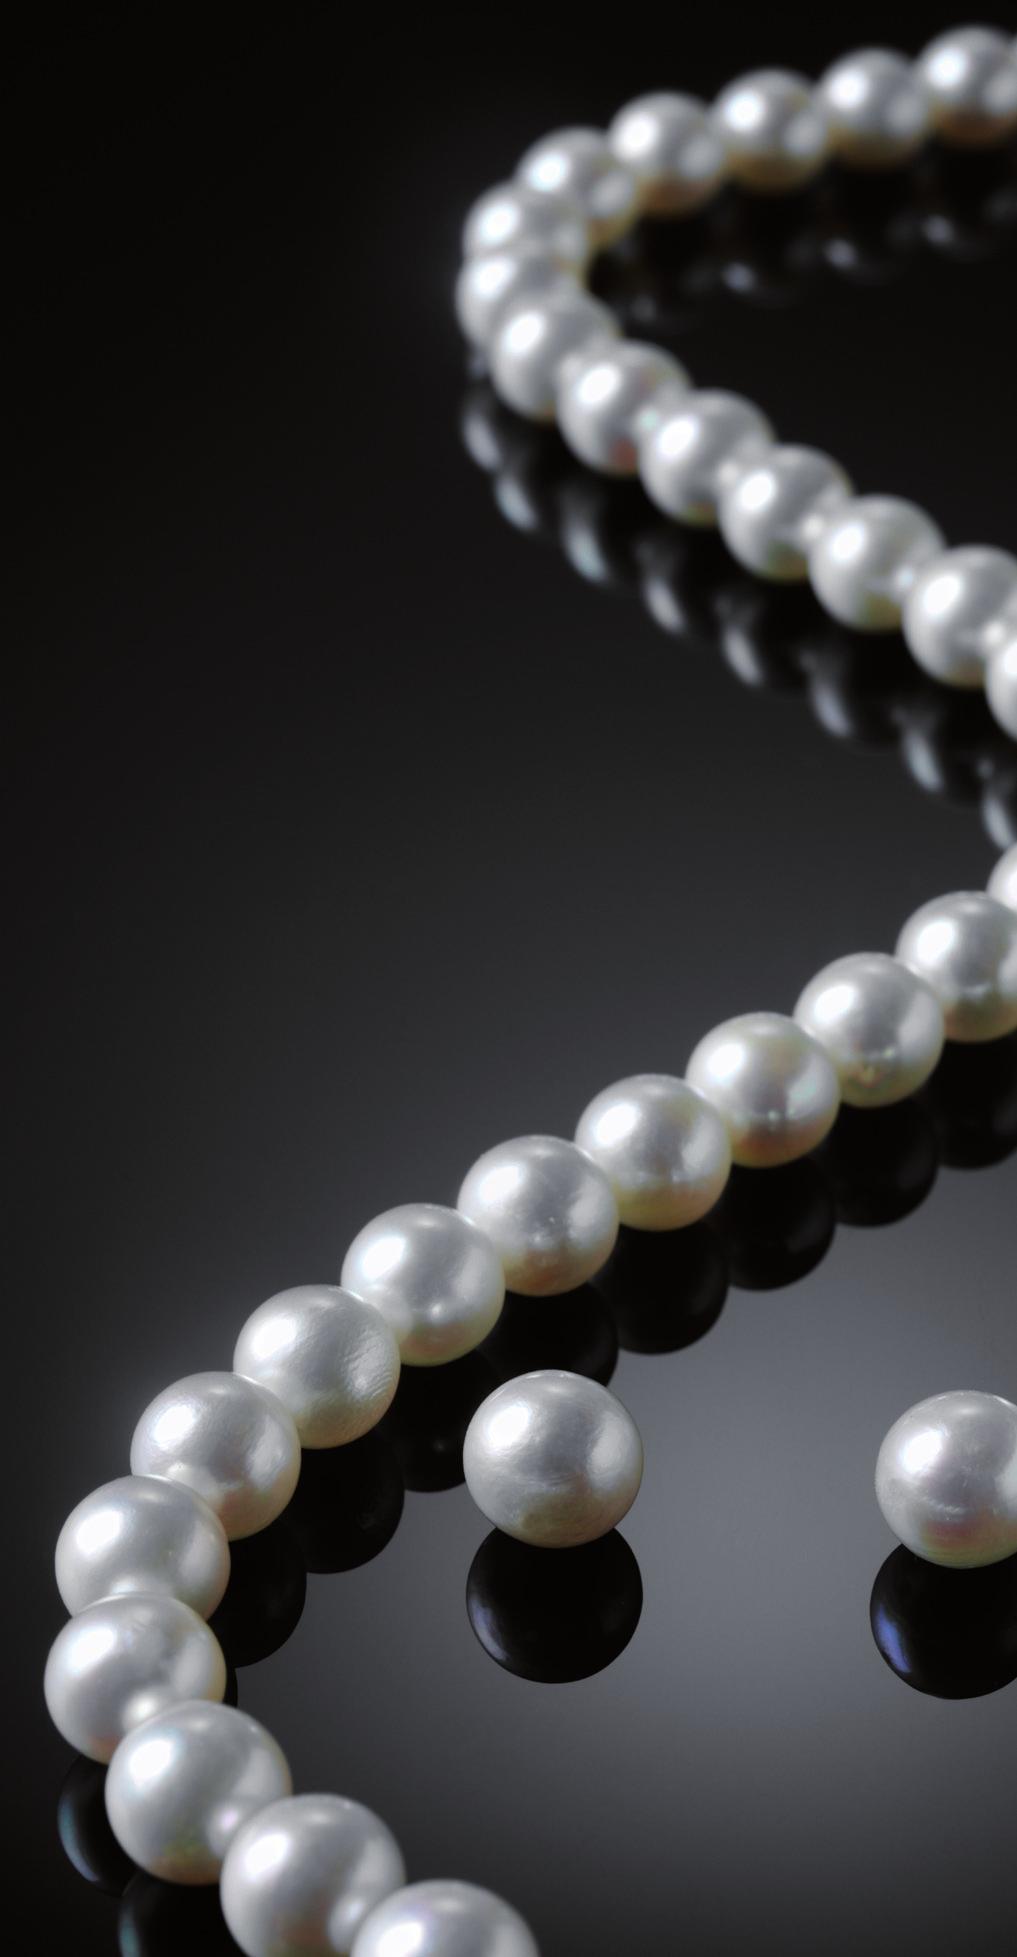 Ma 1 Me 2 Gi 3 Giugno filo di perle... Il colore più comune per le perle è il bianco, ma si possono trovare anche perle rosa, color crema, grigie e nere.